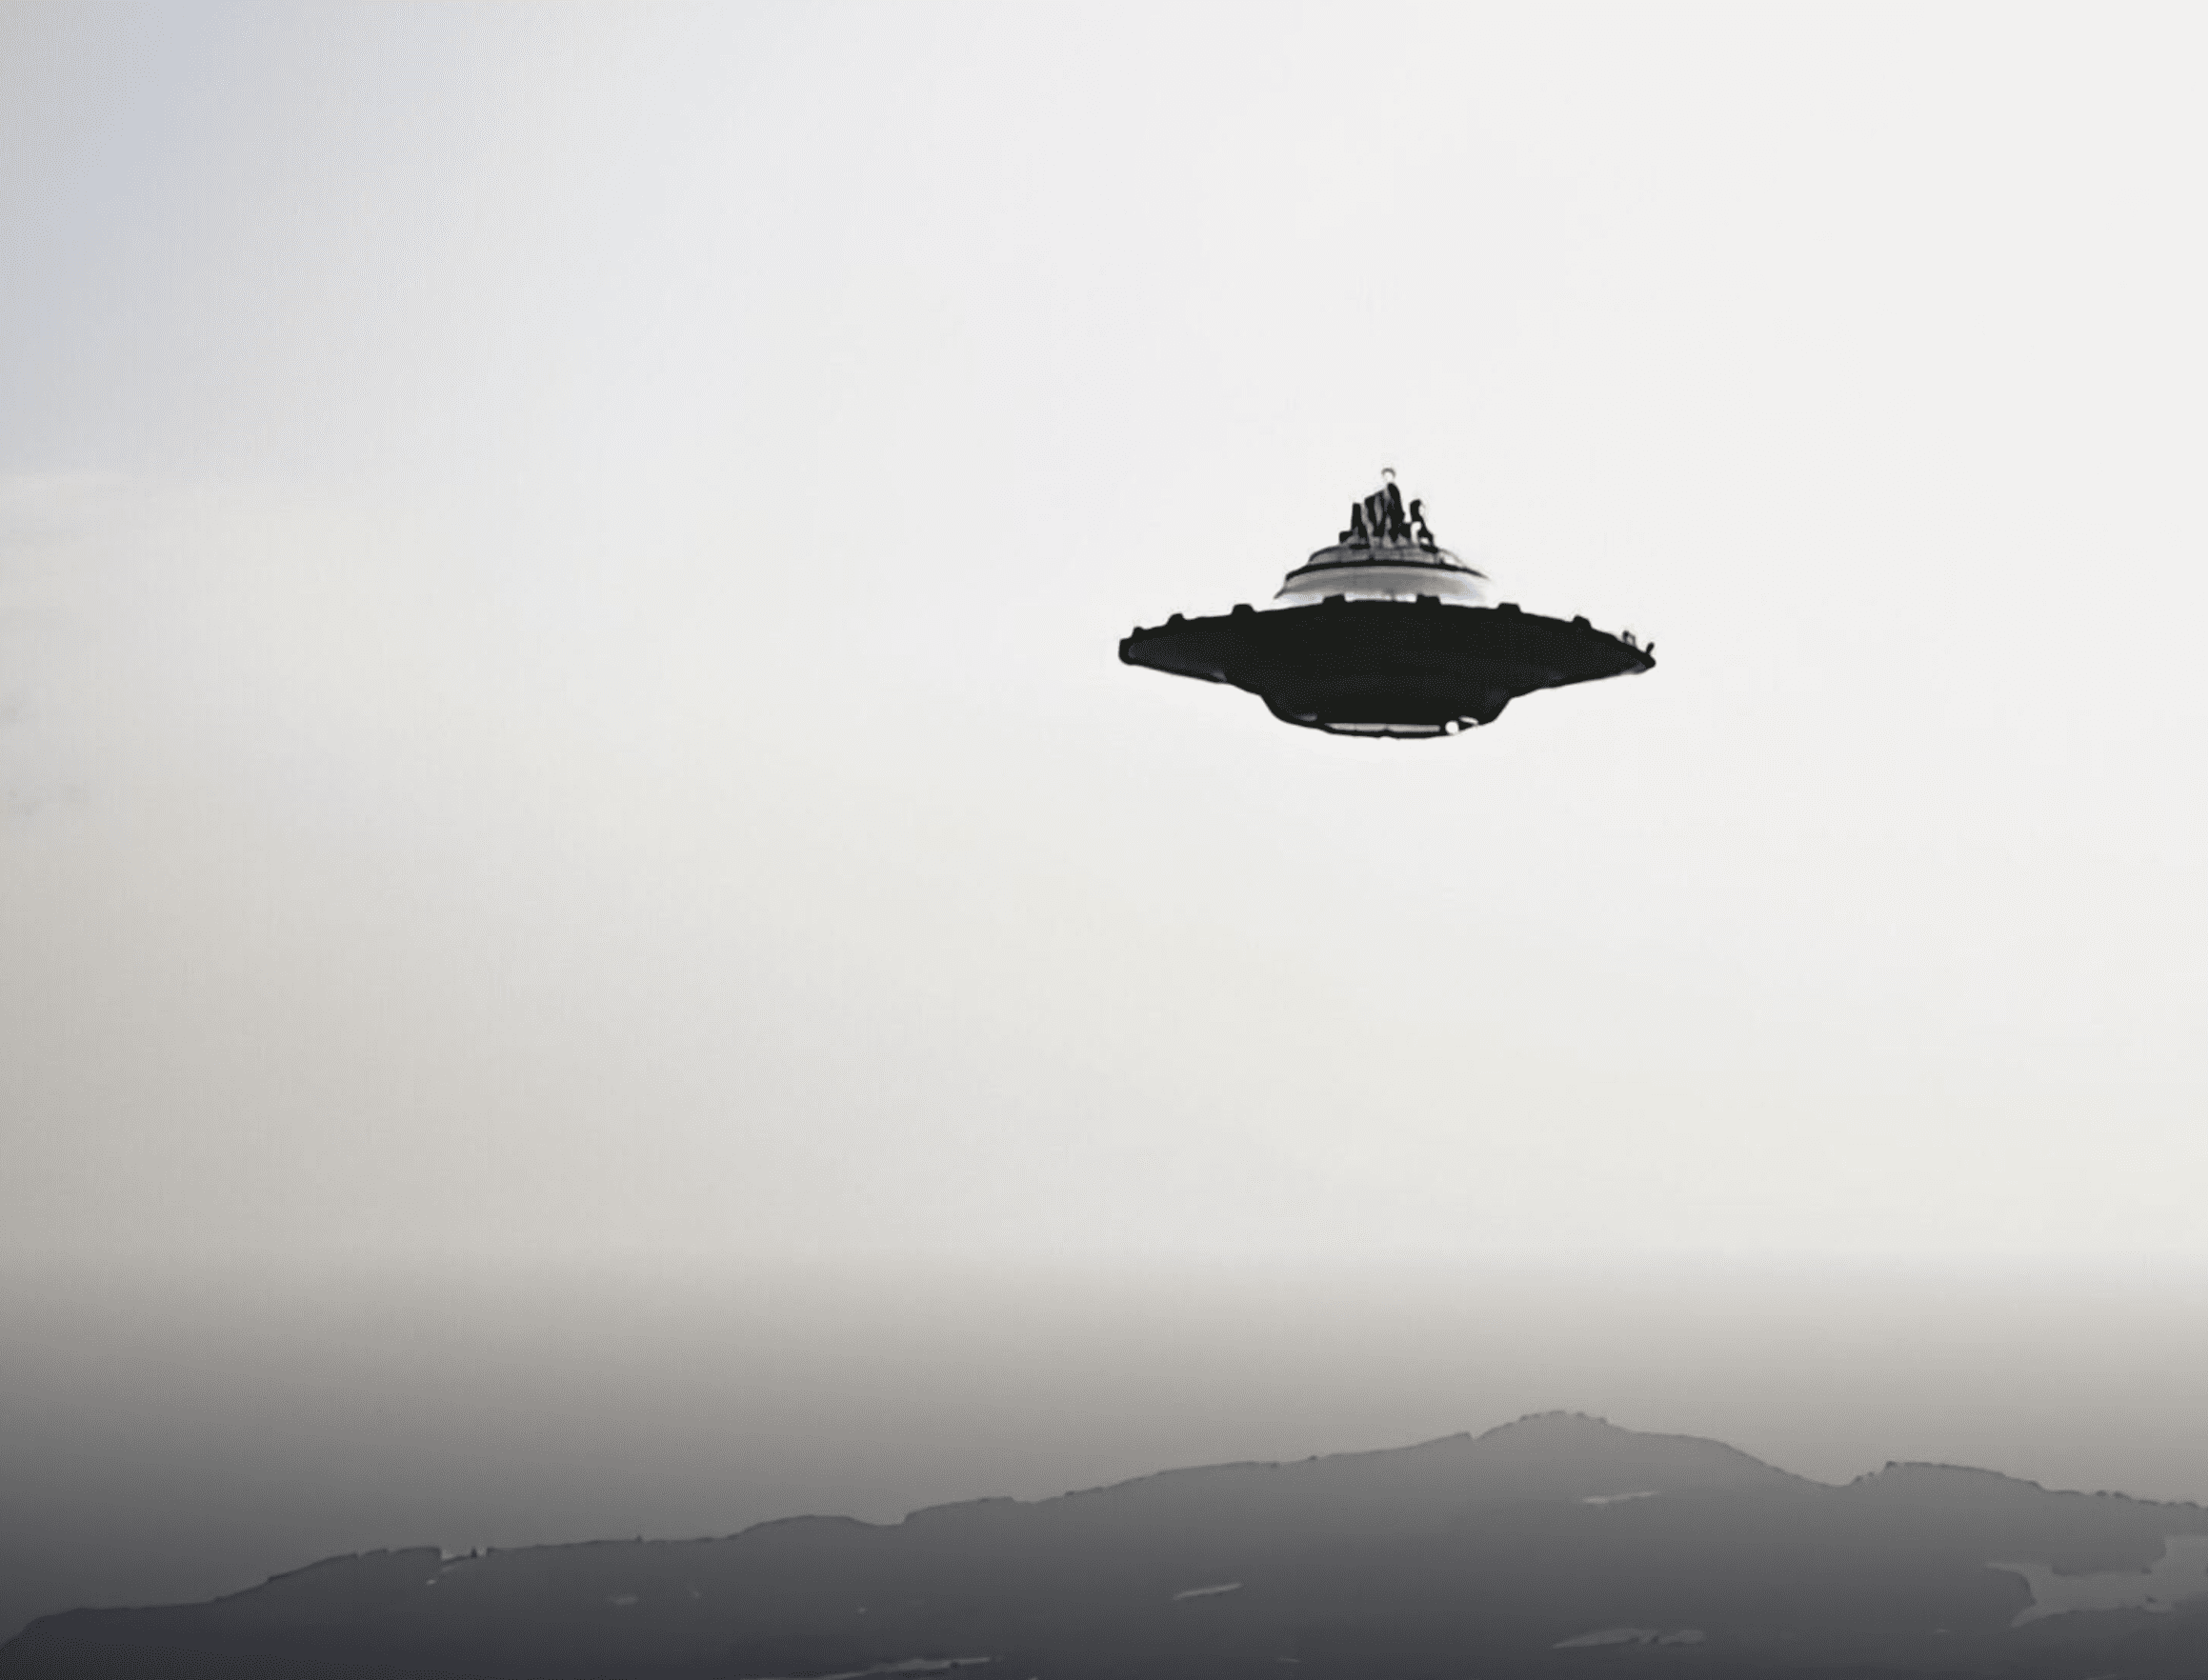 Eräs Billy Meierin yli 1200:sta edelleen vielä toistamattomasta, riippumattomasti todennetusta, ennen digitaalista aikakautta otetusta UFO-kuvasta, jotka on otettu Sveitsissä vuonna 1976.